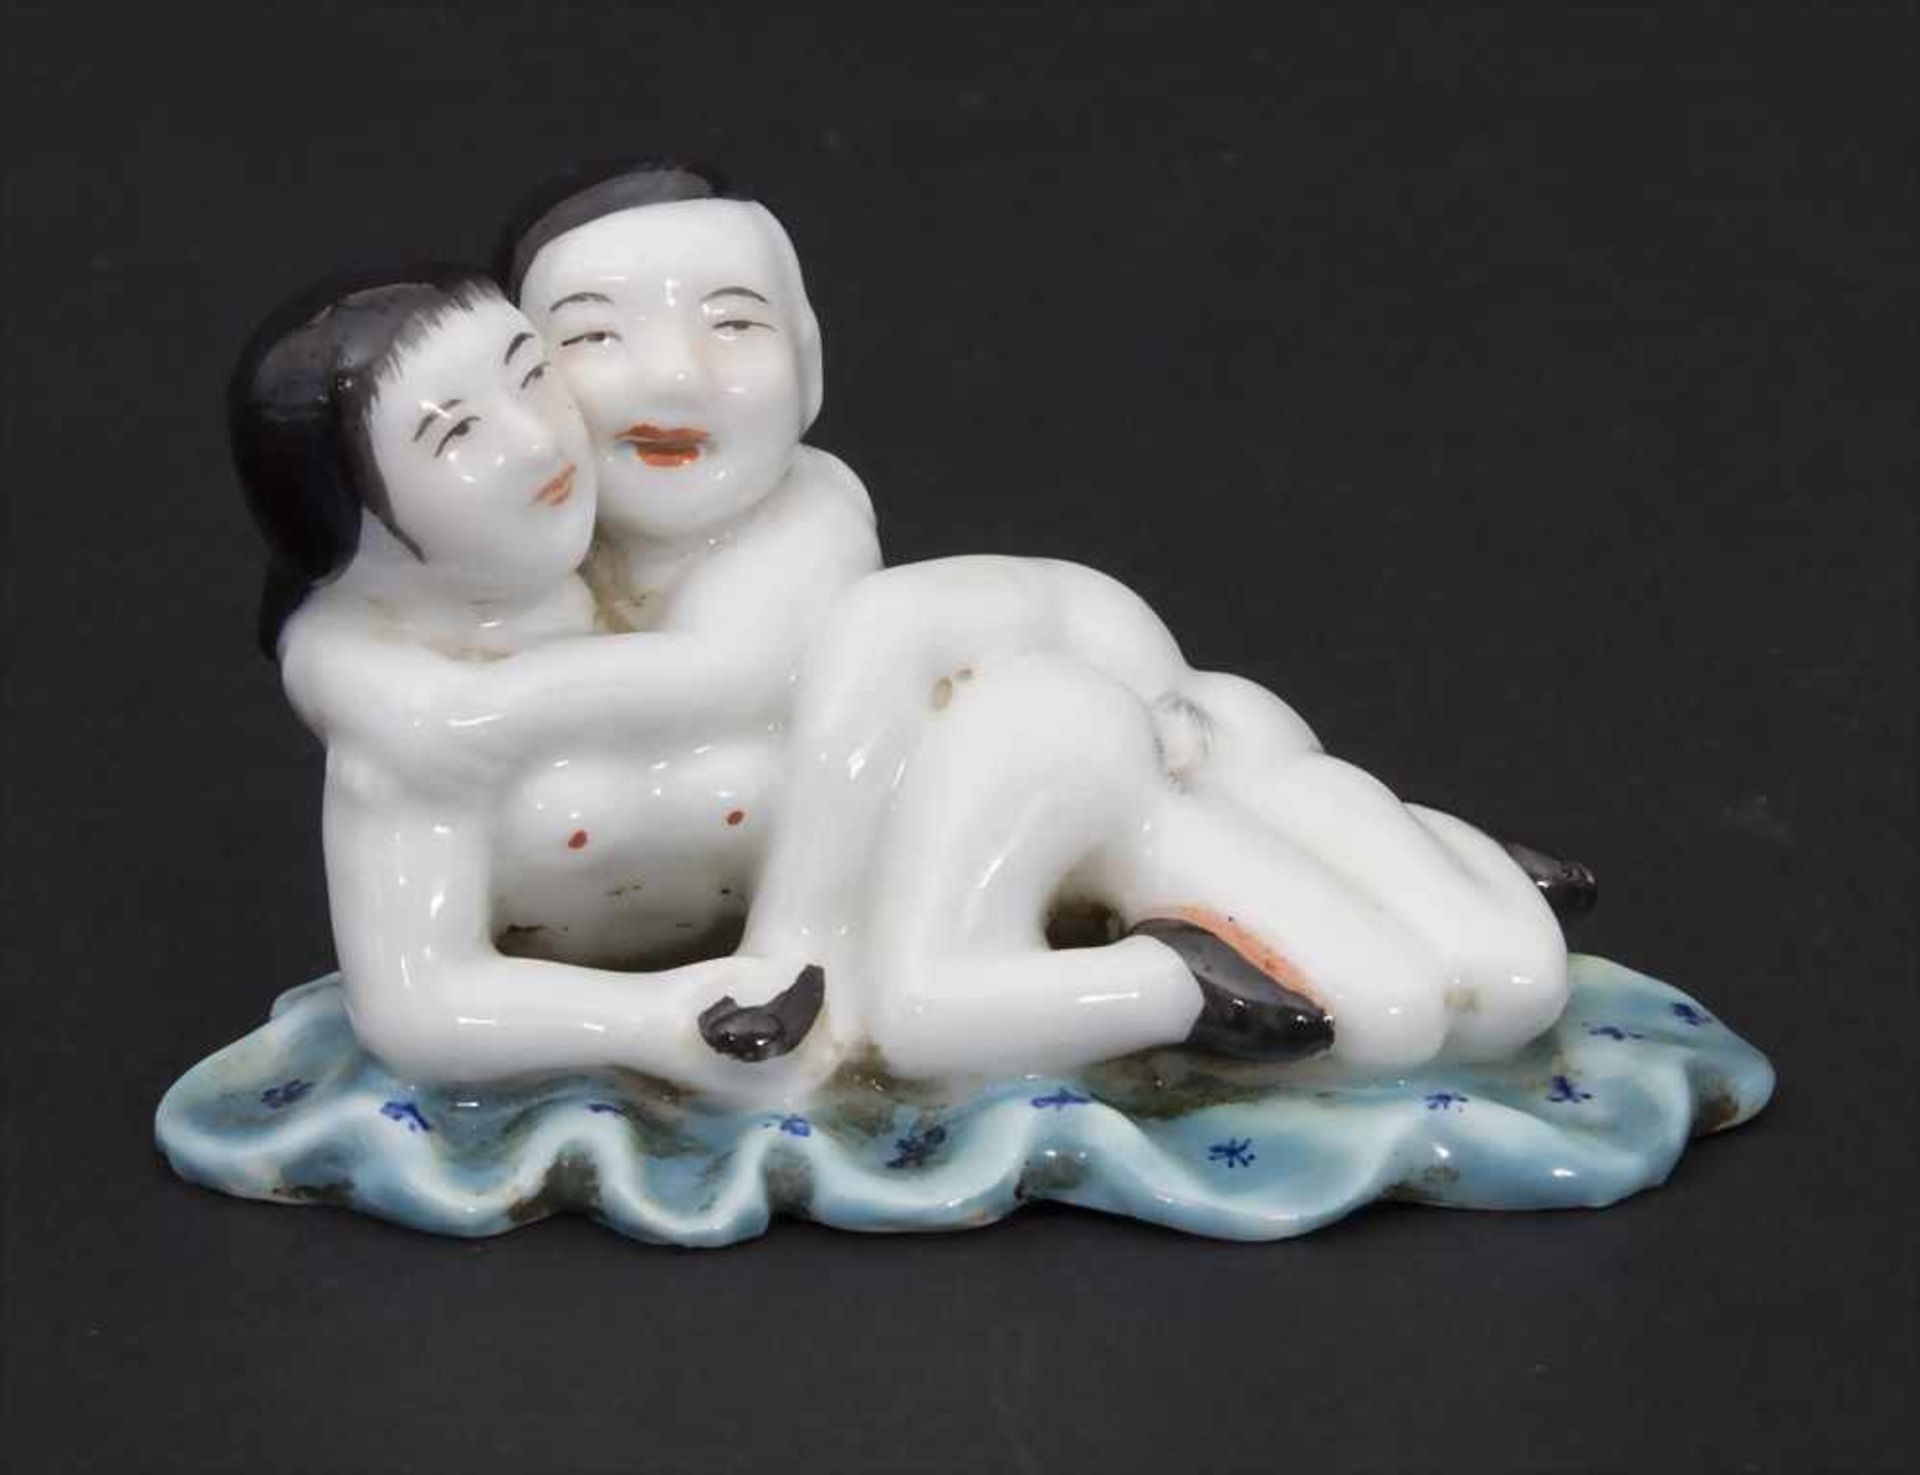 Erotisches Liebespaar, China, 18./19. Jh.Material: Porzellan, polychrom bemalt, Marke/Signatur: